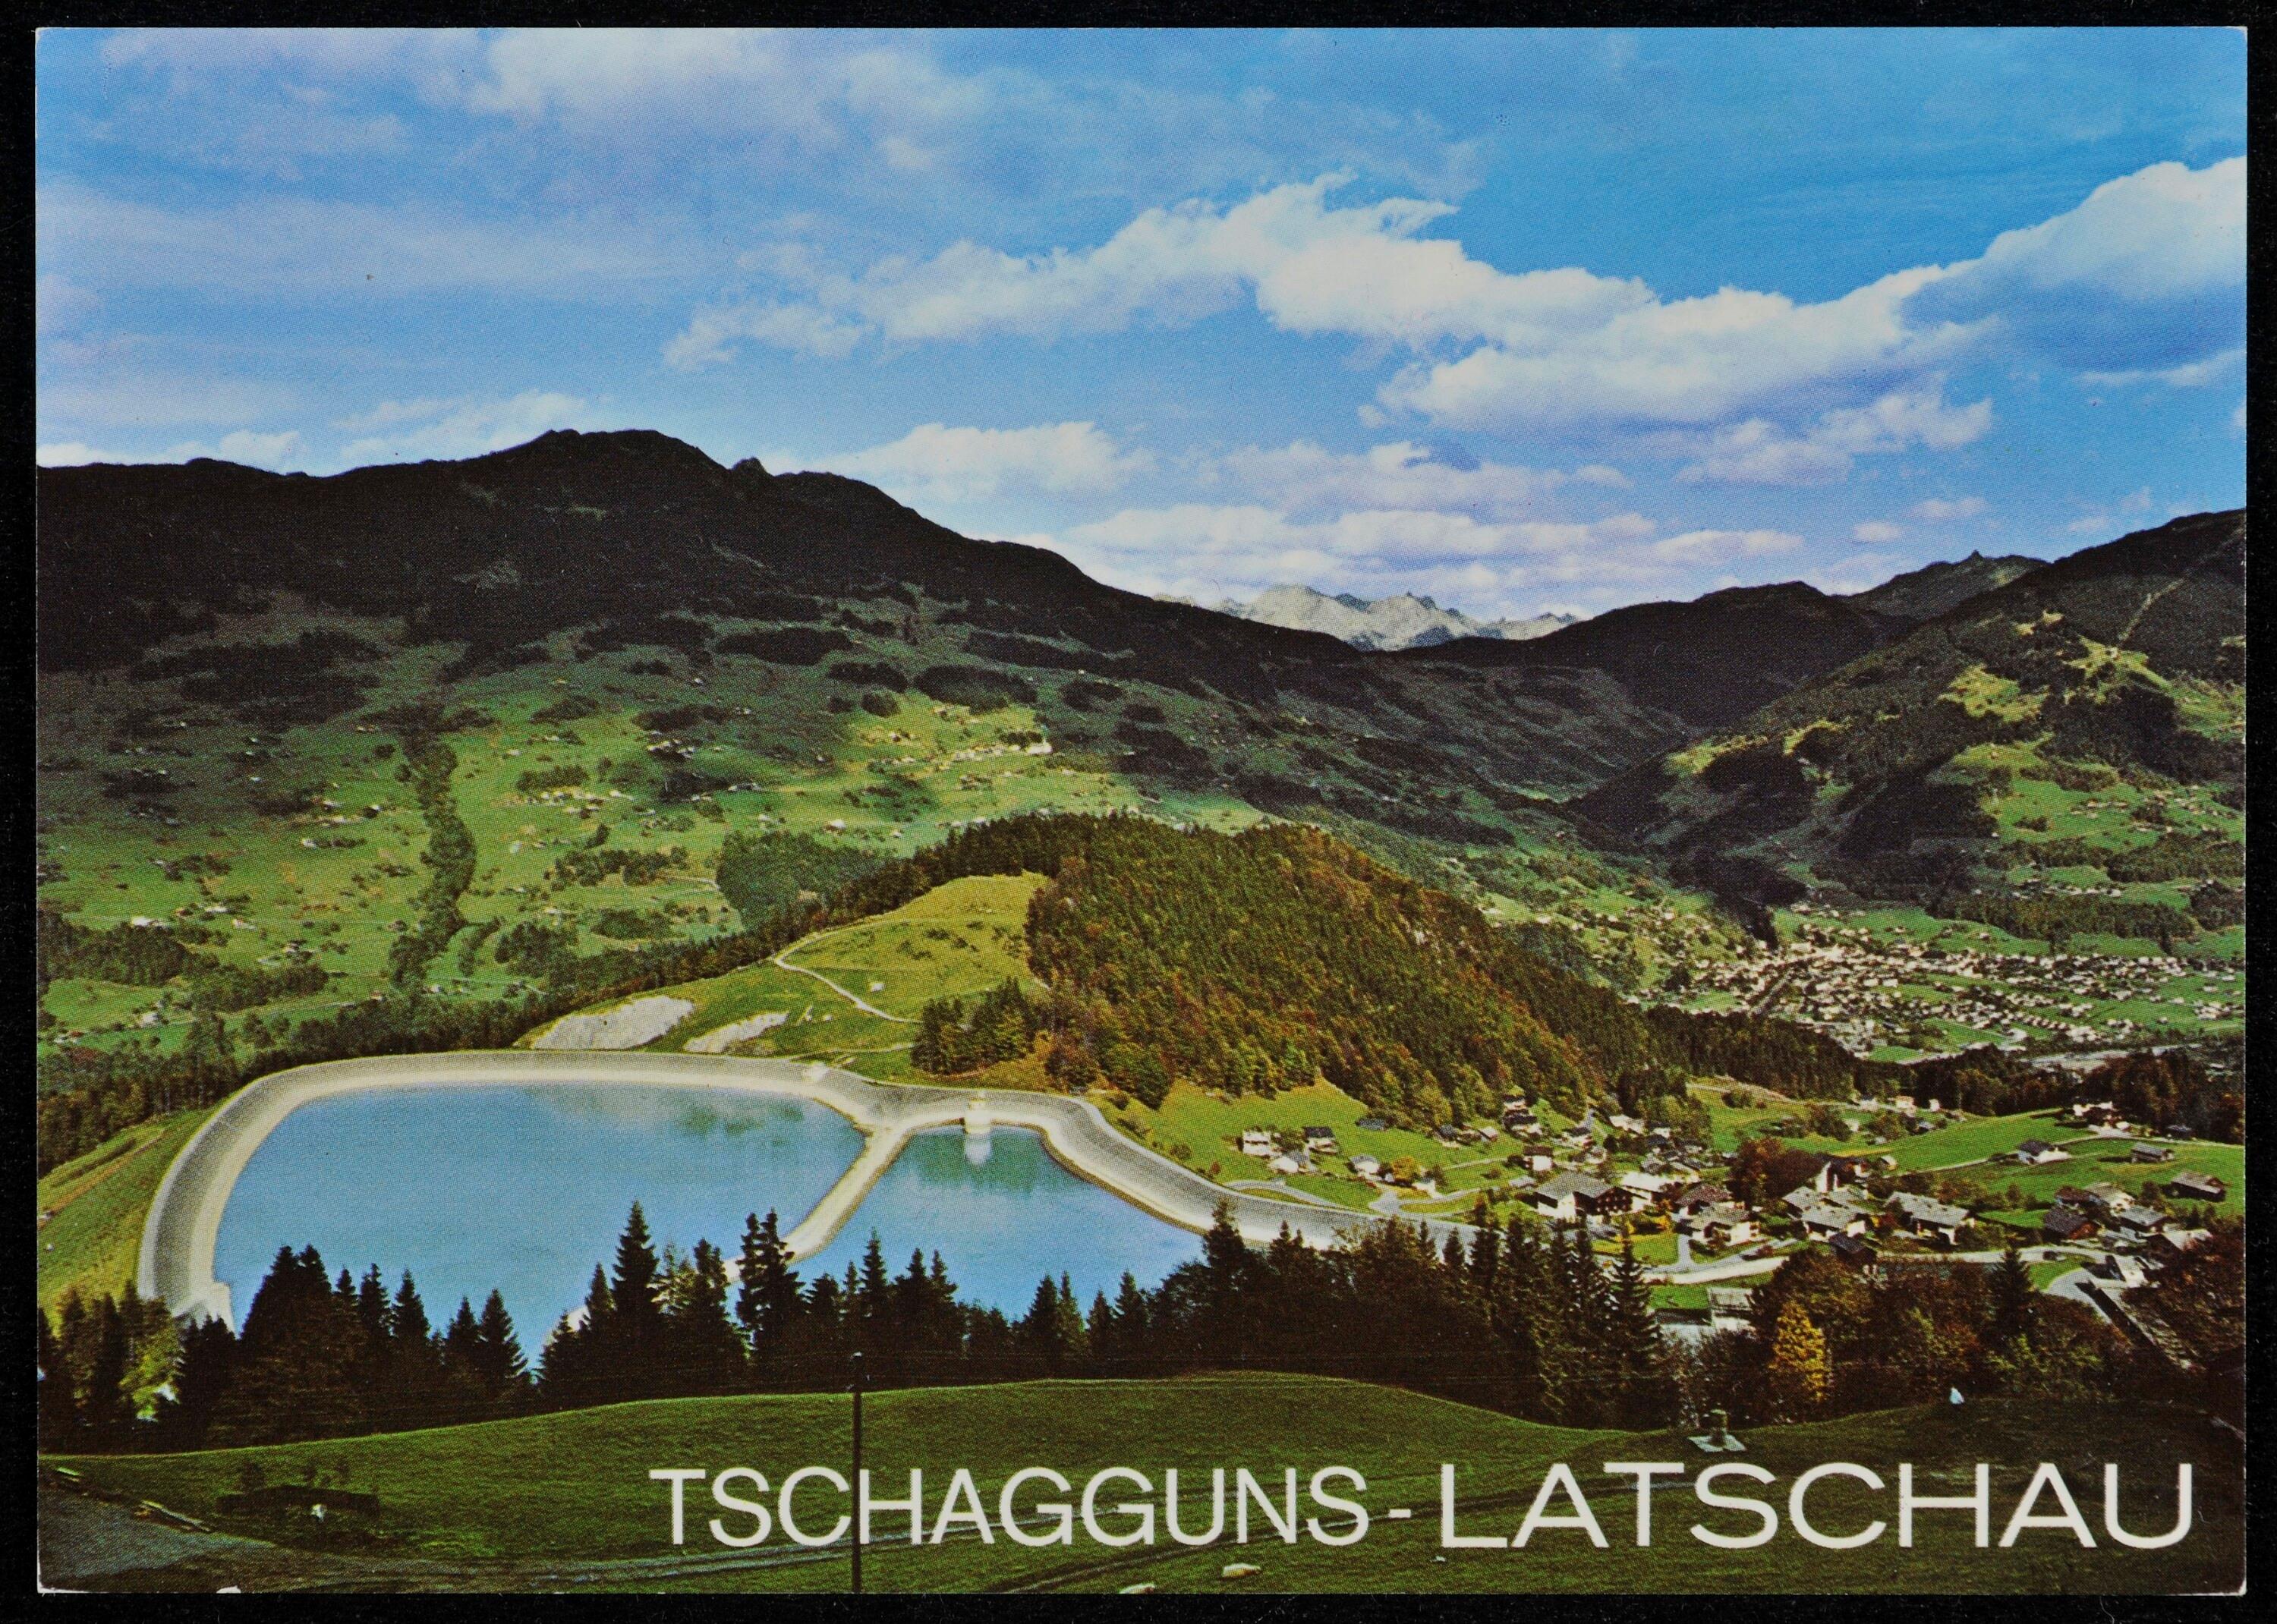 Tschagguns - Latschau></div>


    <hr>
    <div class=